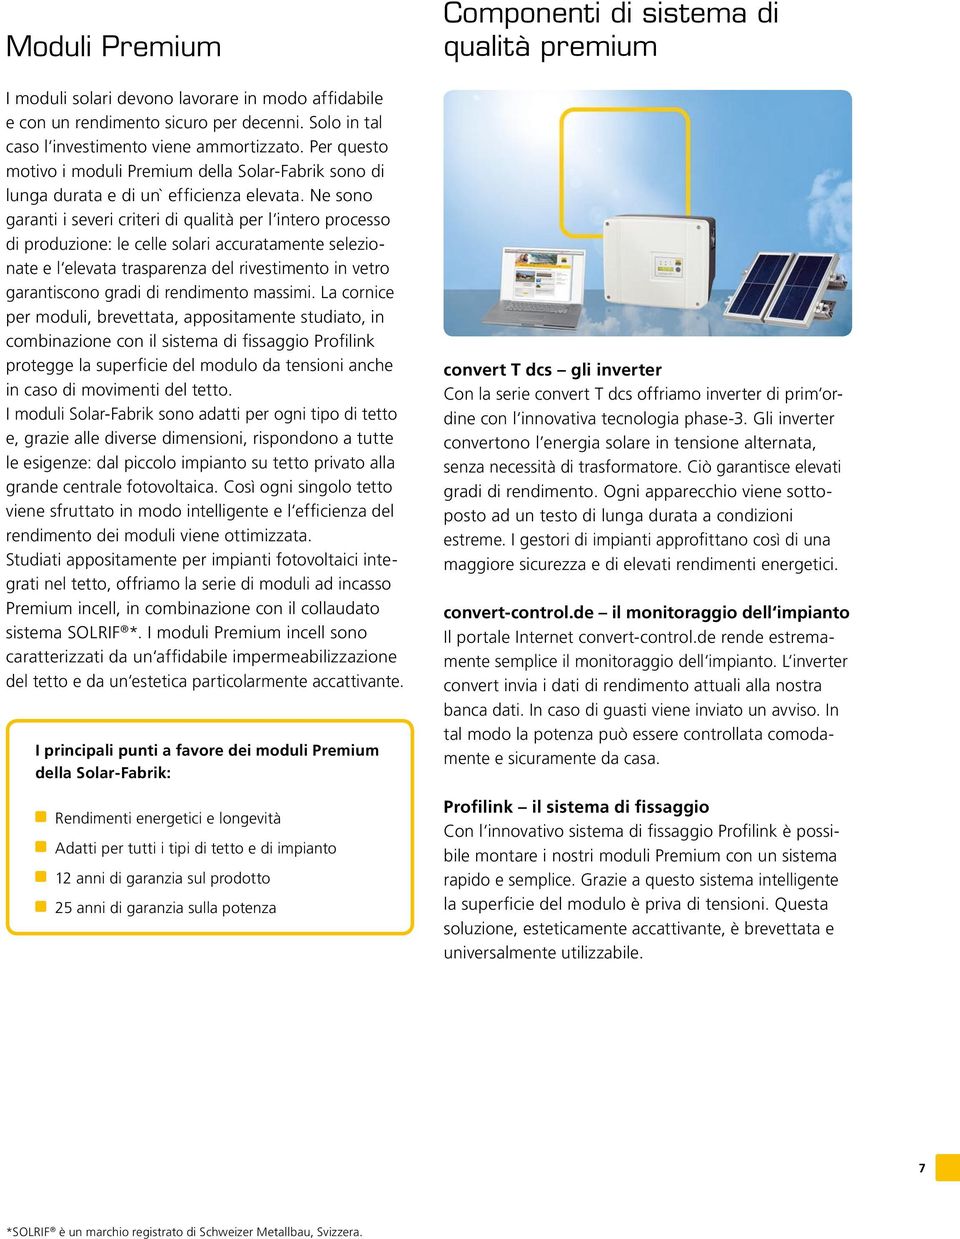 Ne sono garanti i severi criteri di qualità per l intero processo di produzione: le celle solari accuratamente selezionate e l elevata trasparenza del rivestimento in vetro garantiscono gradi di